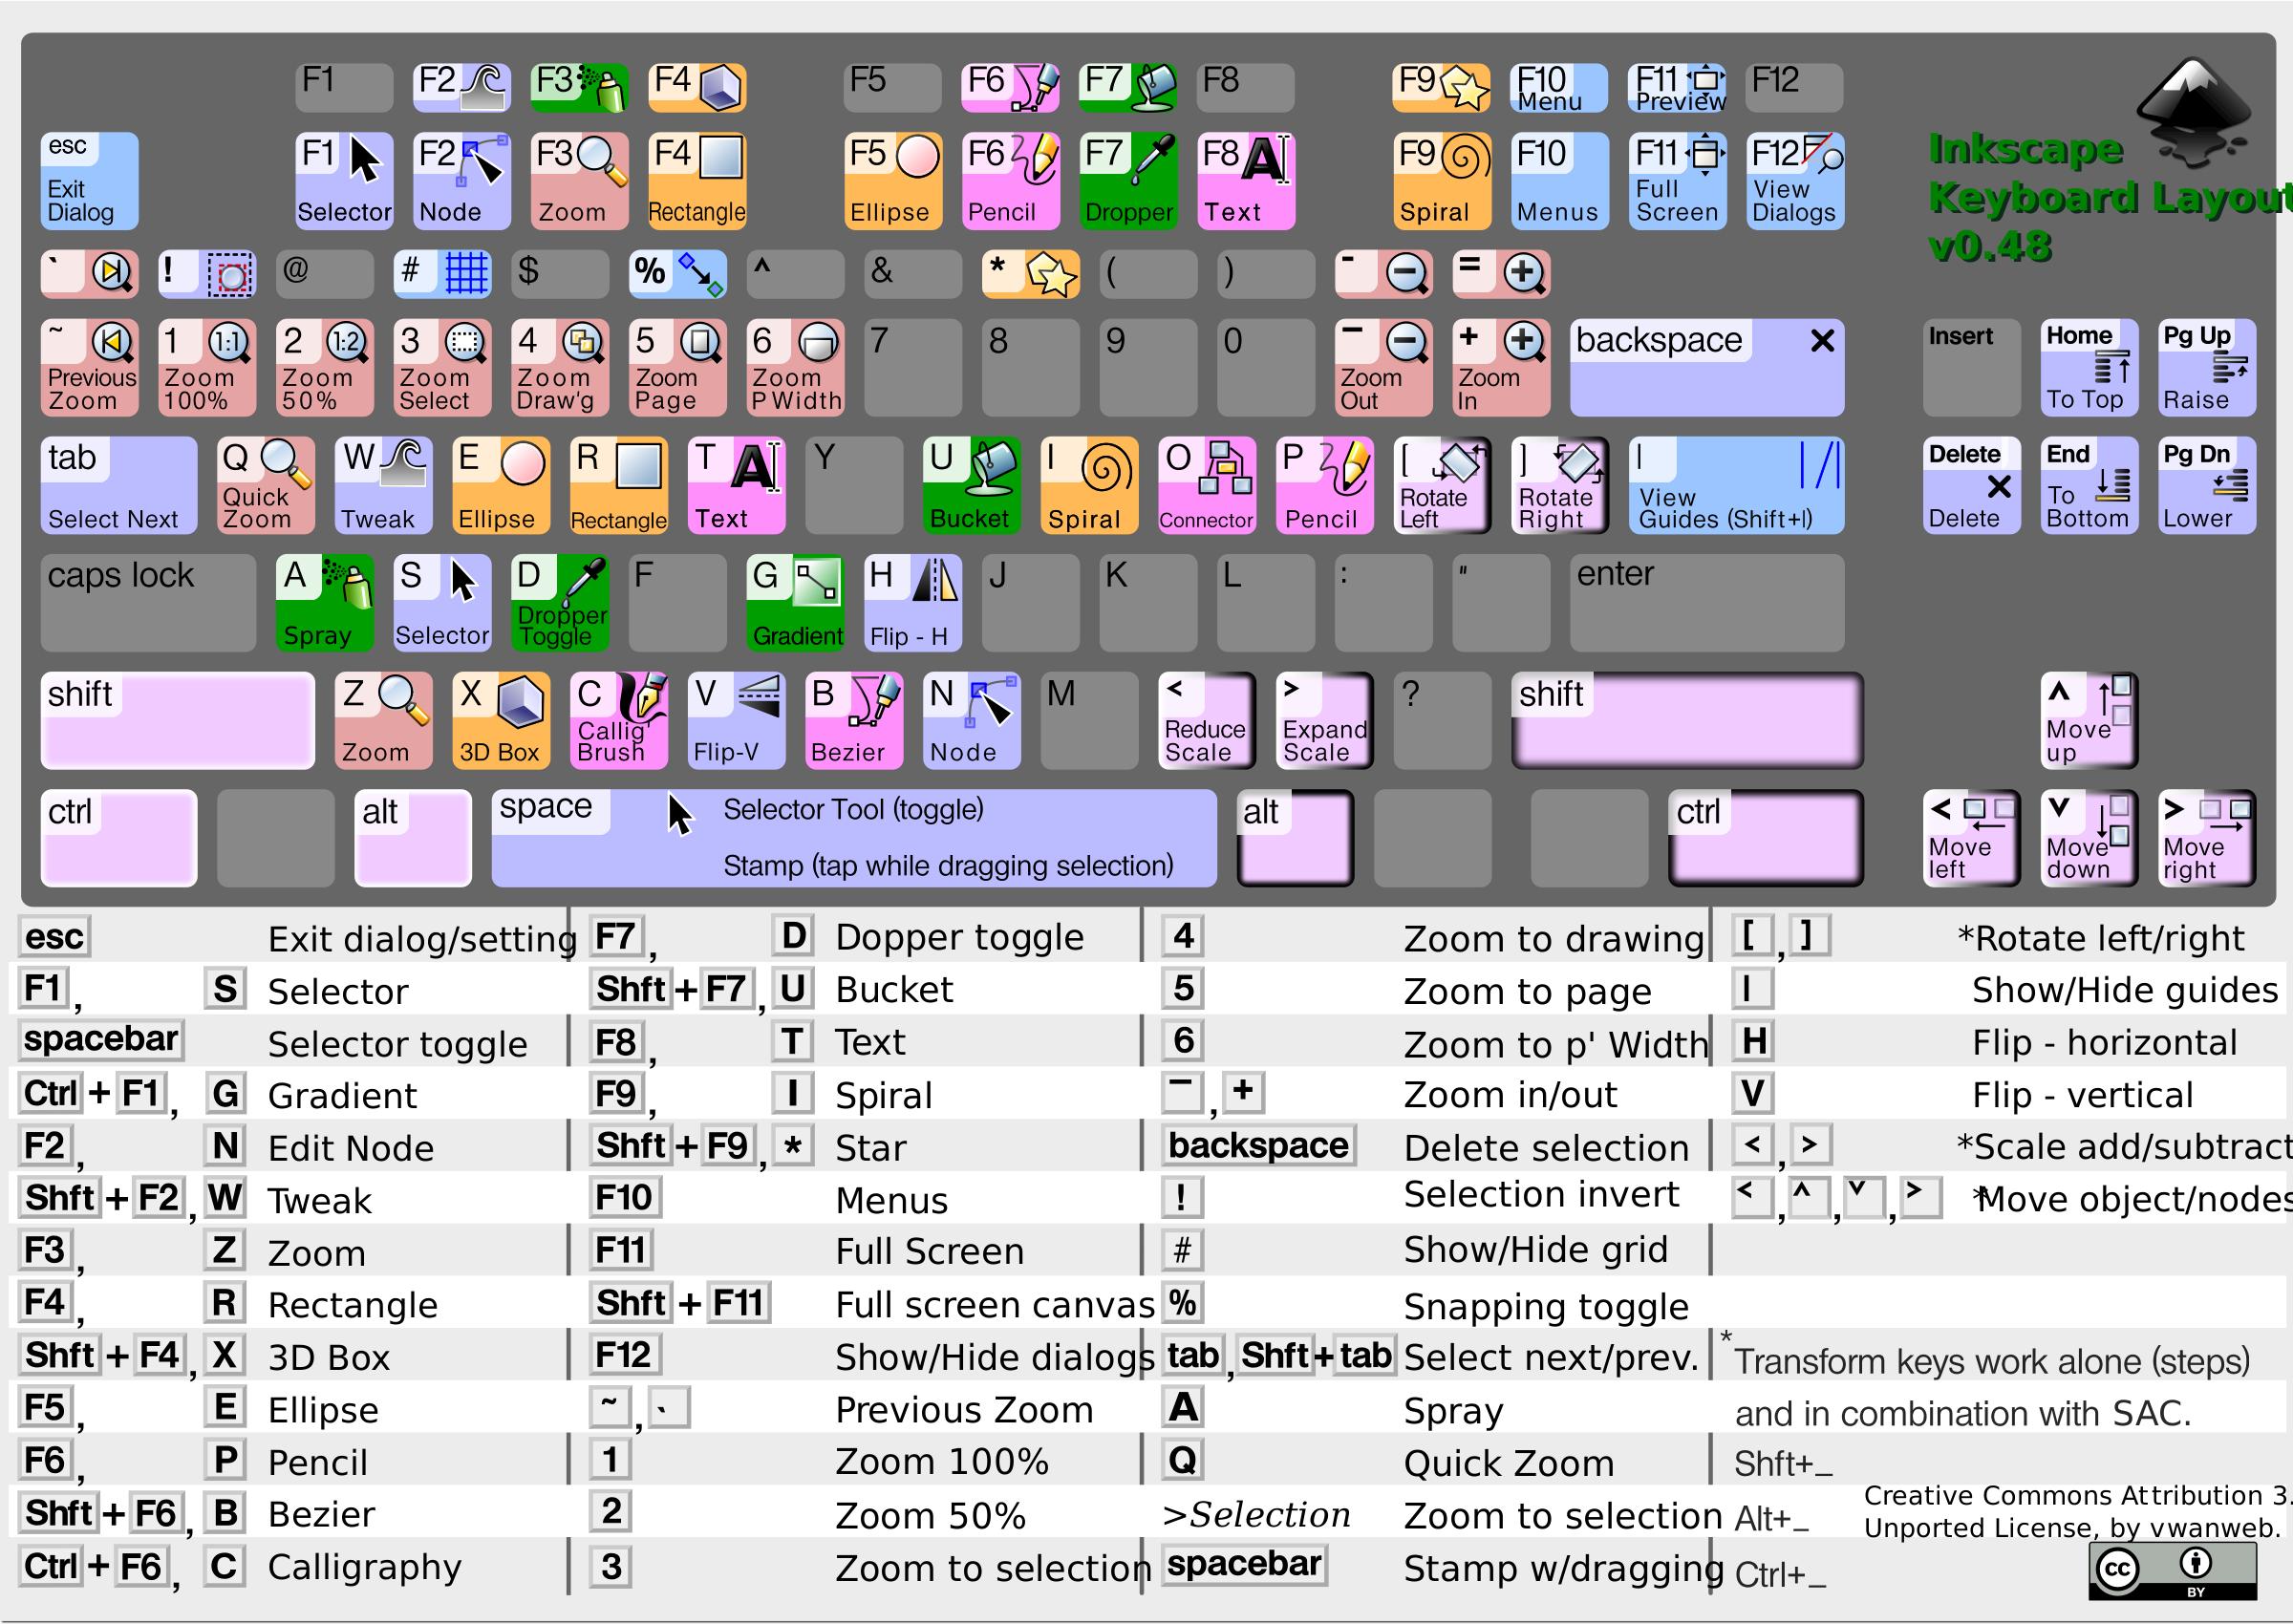 Inkscape Keyboard Layout v0.48.4 png